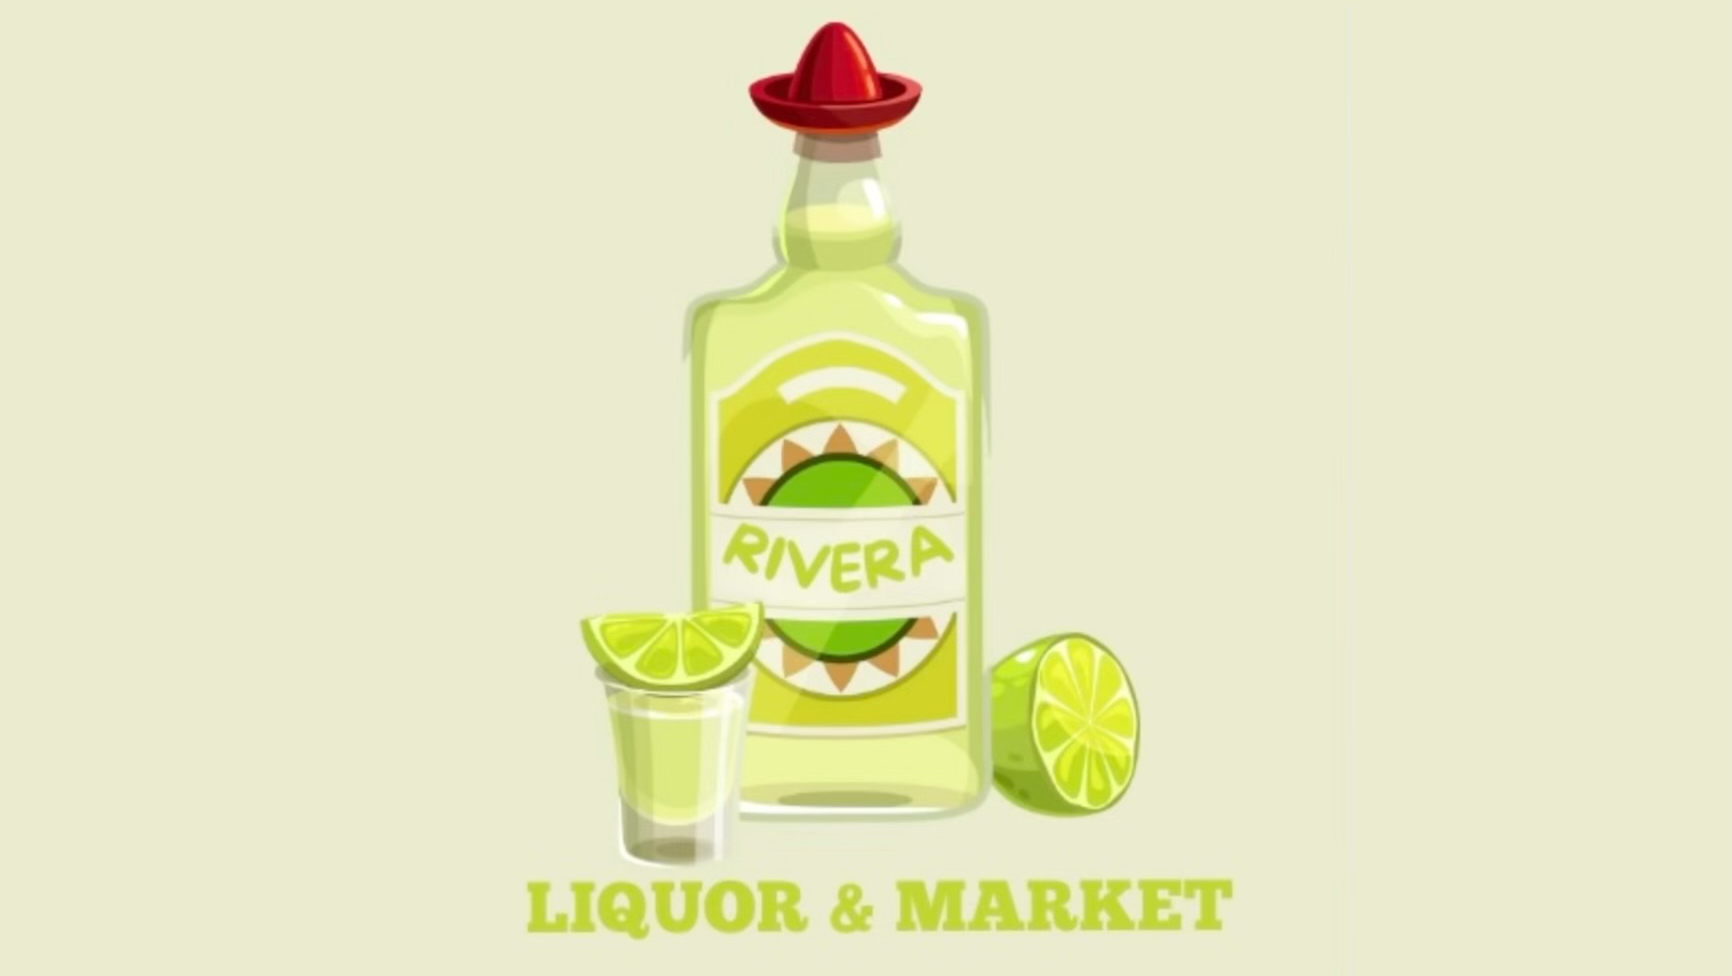 Rivera Liquor & Market